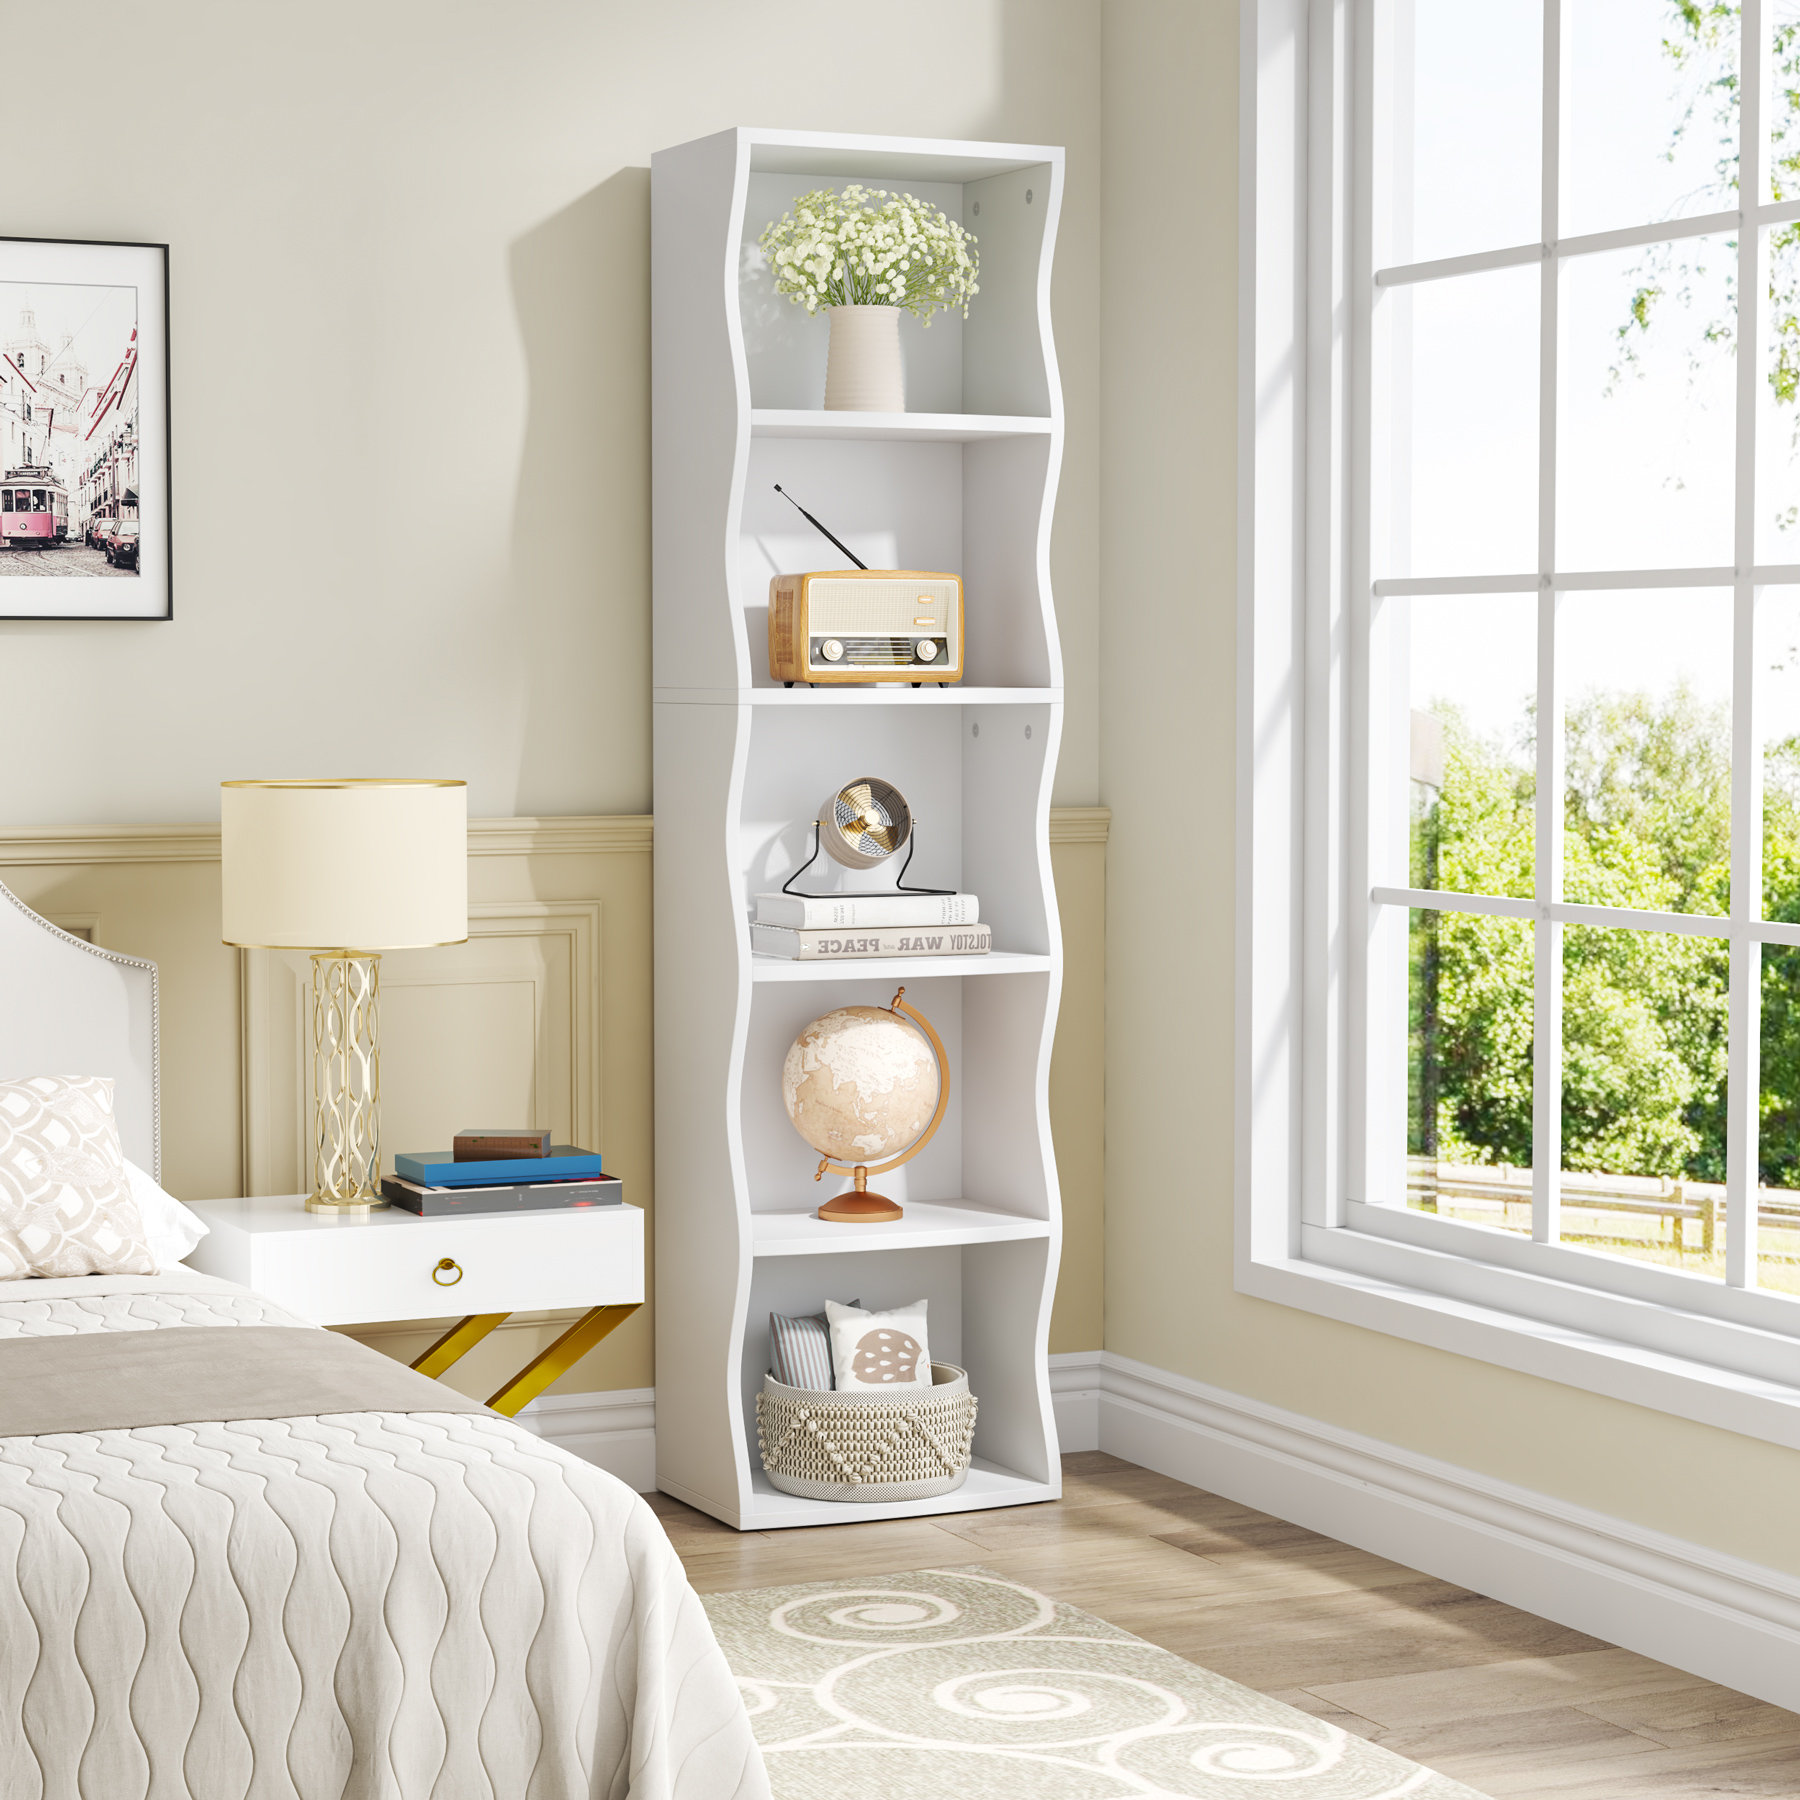 https://assets.wfcdn.com/im/20525251/compr-r85/2432/243251929/baram-5-shelf-bookcase-modern-white-wooden-bookshelf-for-bedroom-living-room-home-office.jpg